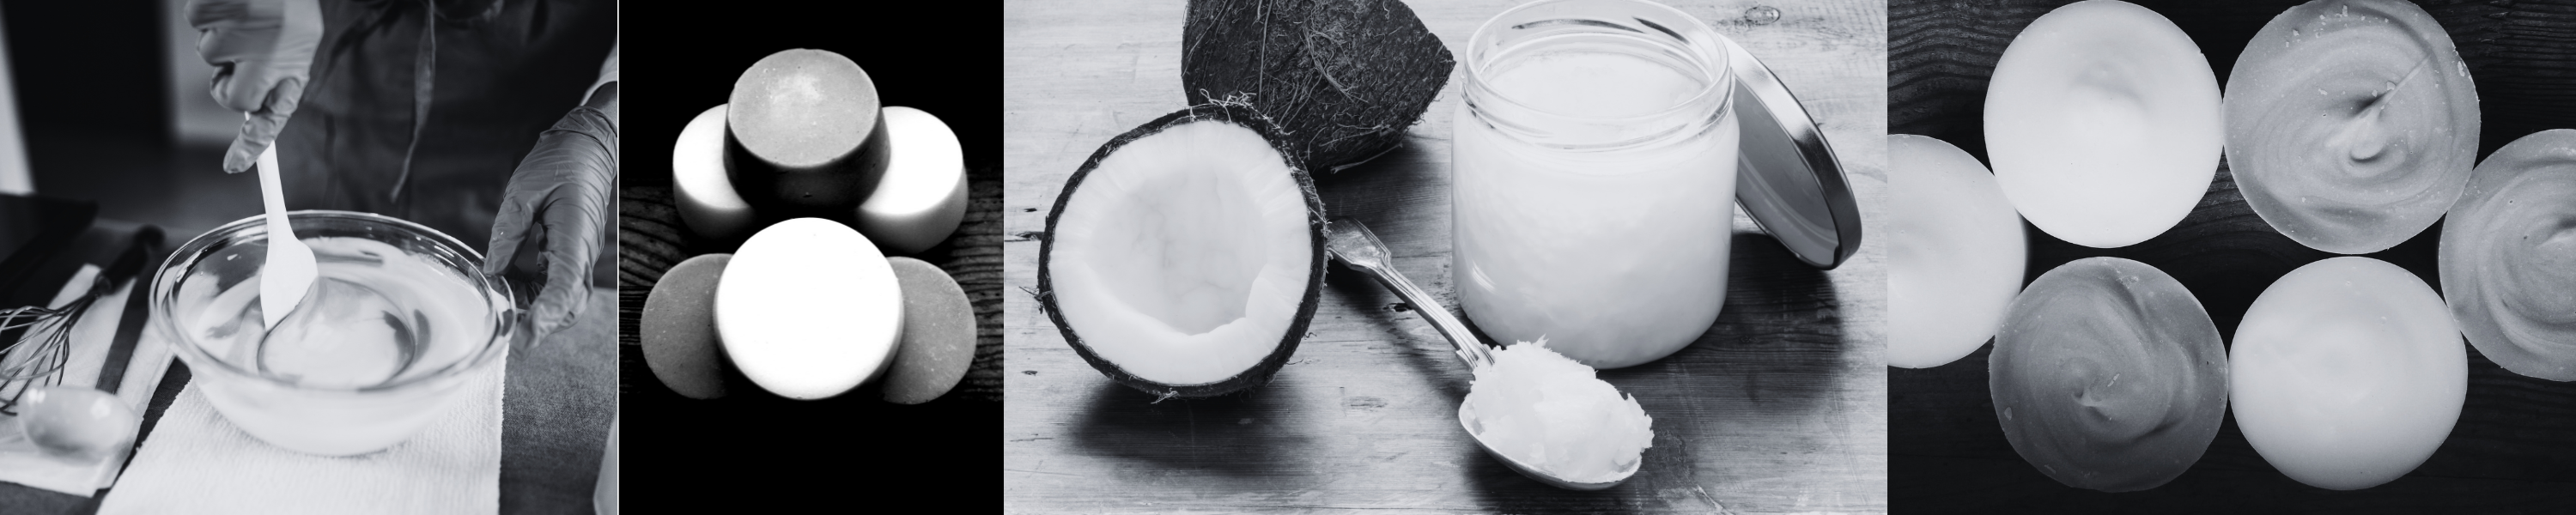 Olej babassu kontra kokosowy